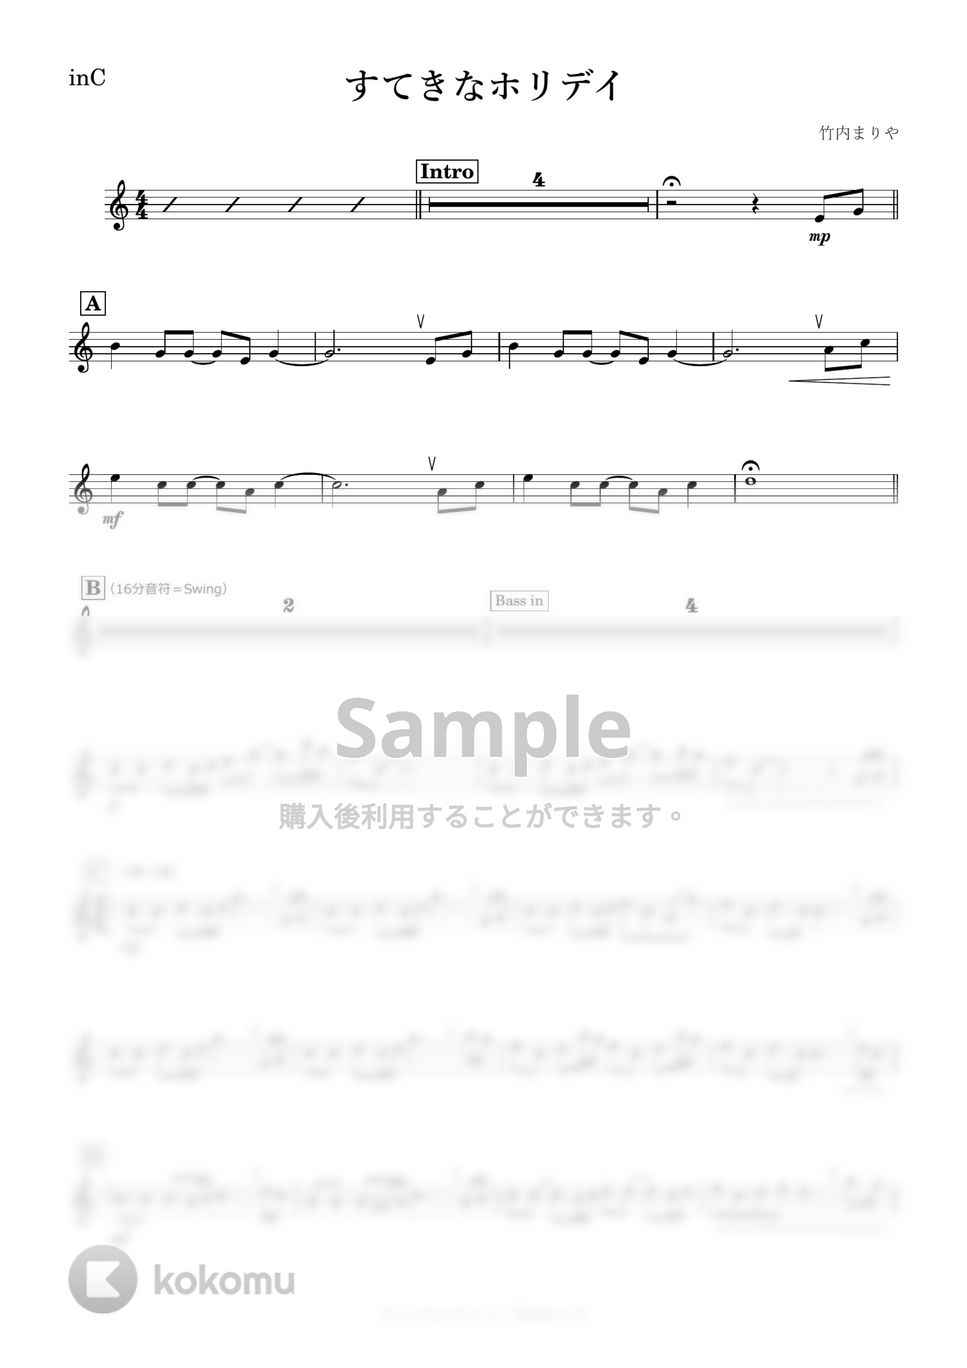 竹内まりや - すてきなホリデイ (C) by kanamusic